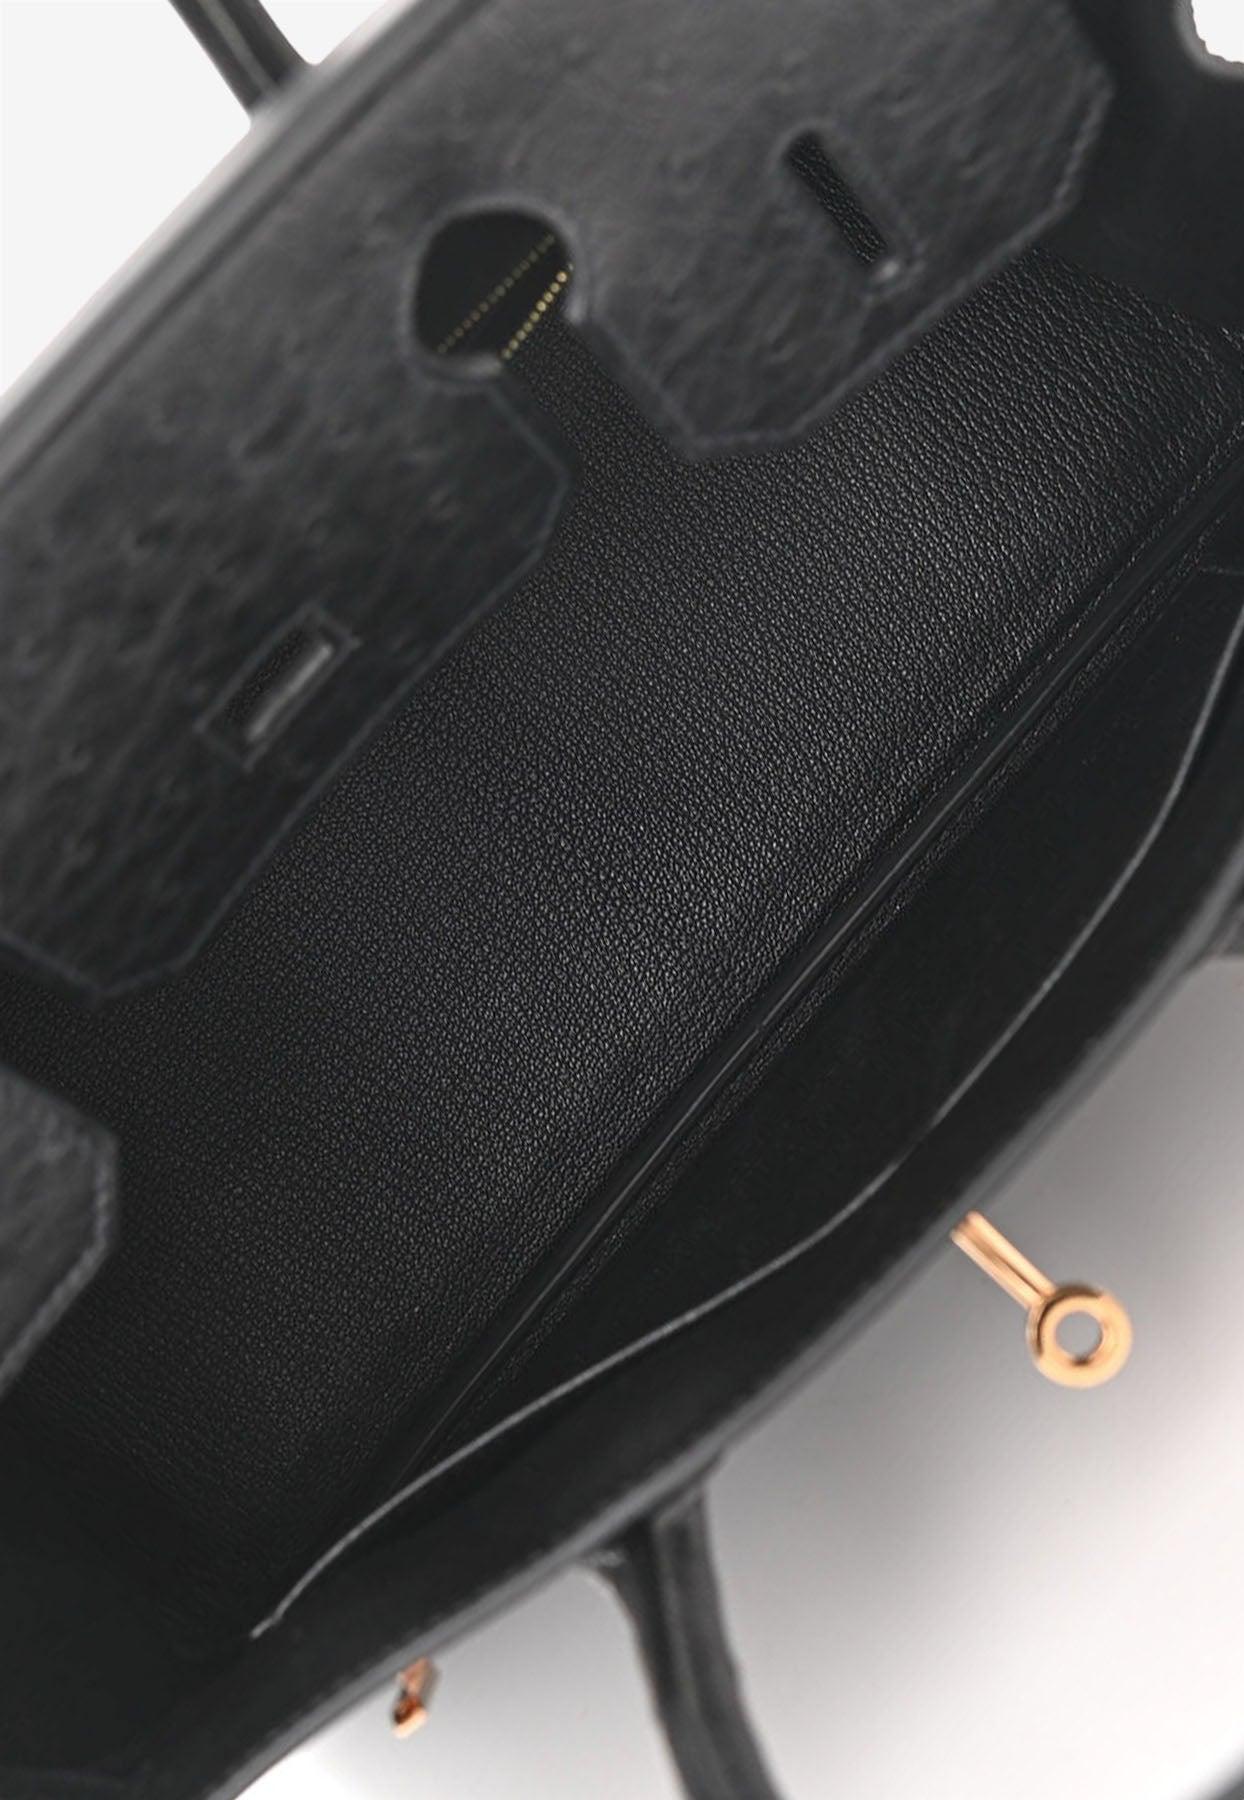 Hermès Birkin 25 Black Ostrich Gold Hardware